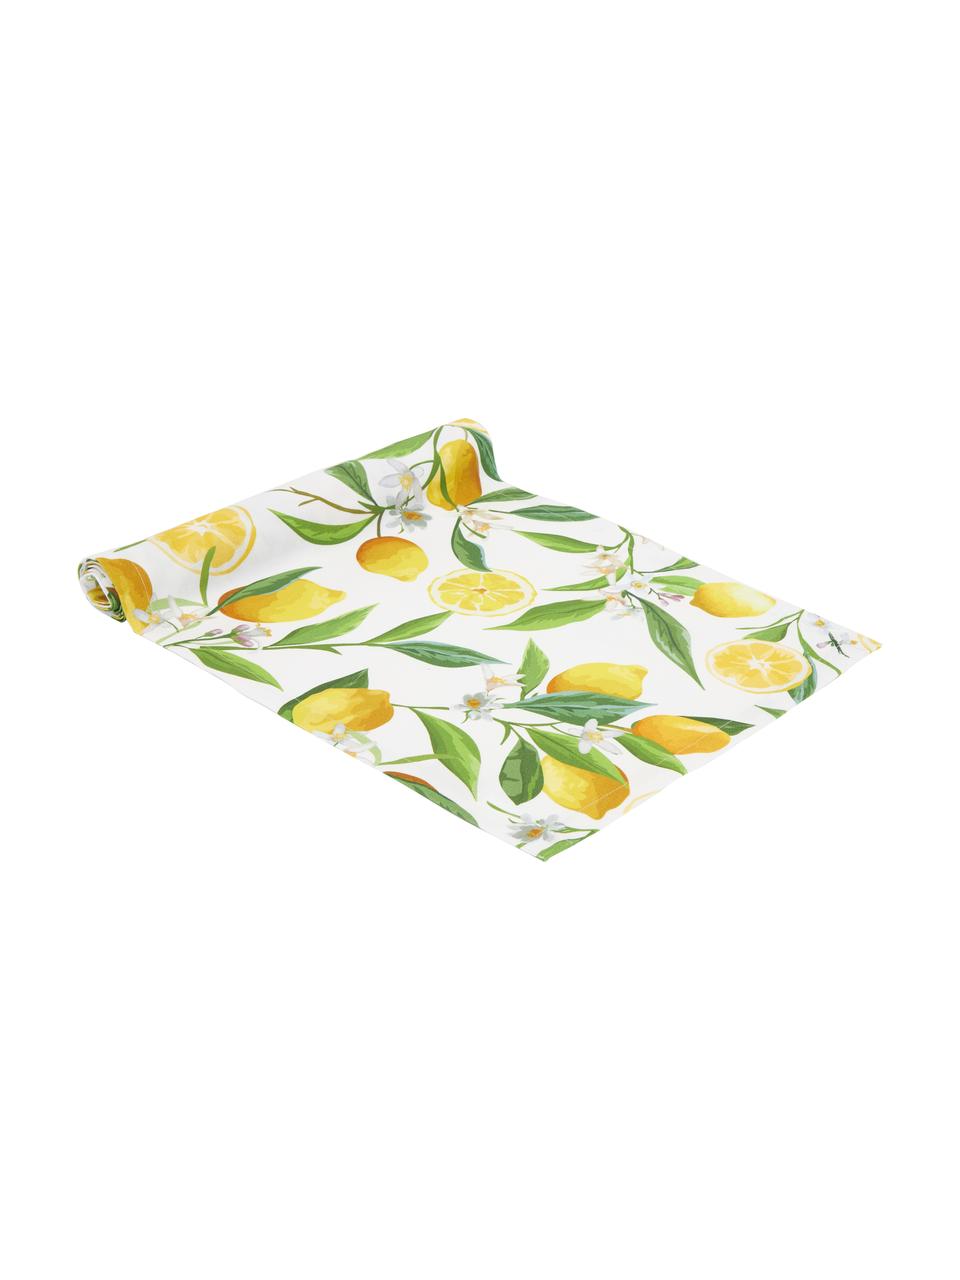 Baumwolle-Tischläufer Frutta mit Zitronen-Motiv, 100 % Baumwolle, Gelb, Weiß, Grün, B 40 x L 145 cm